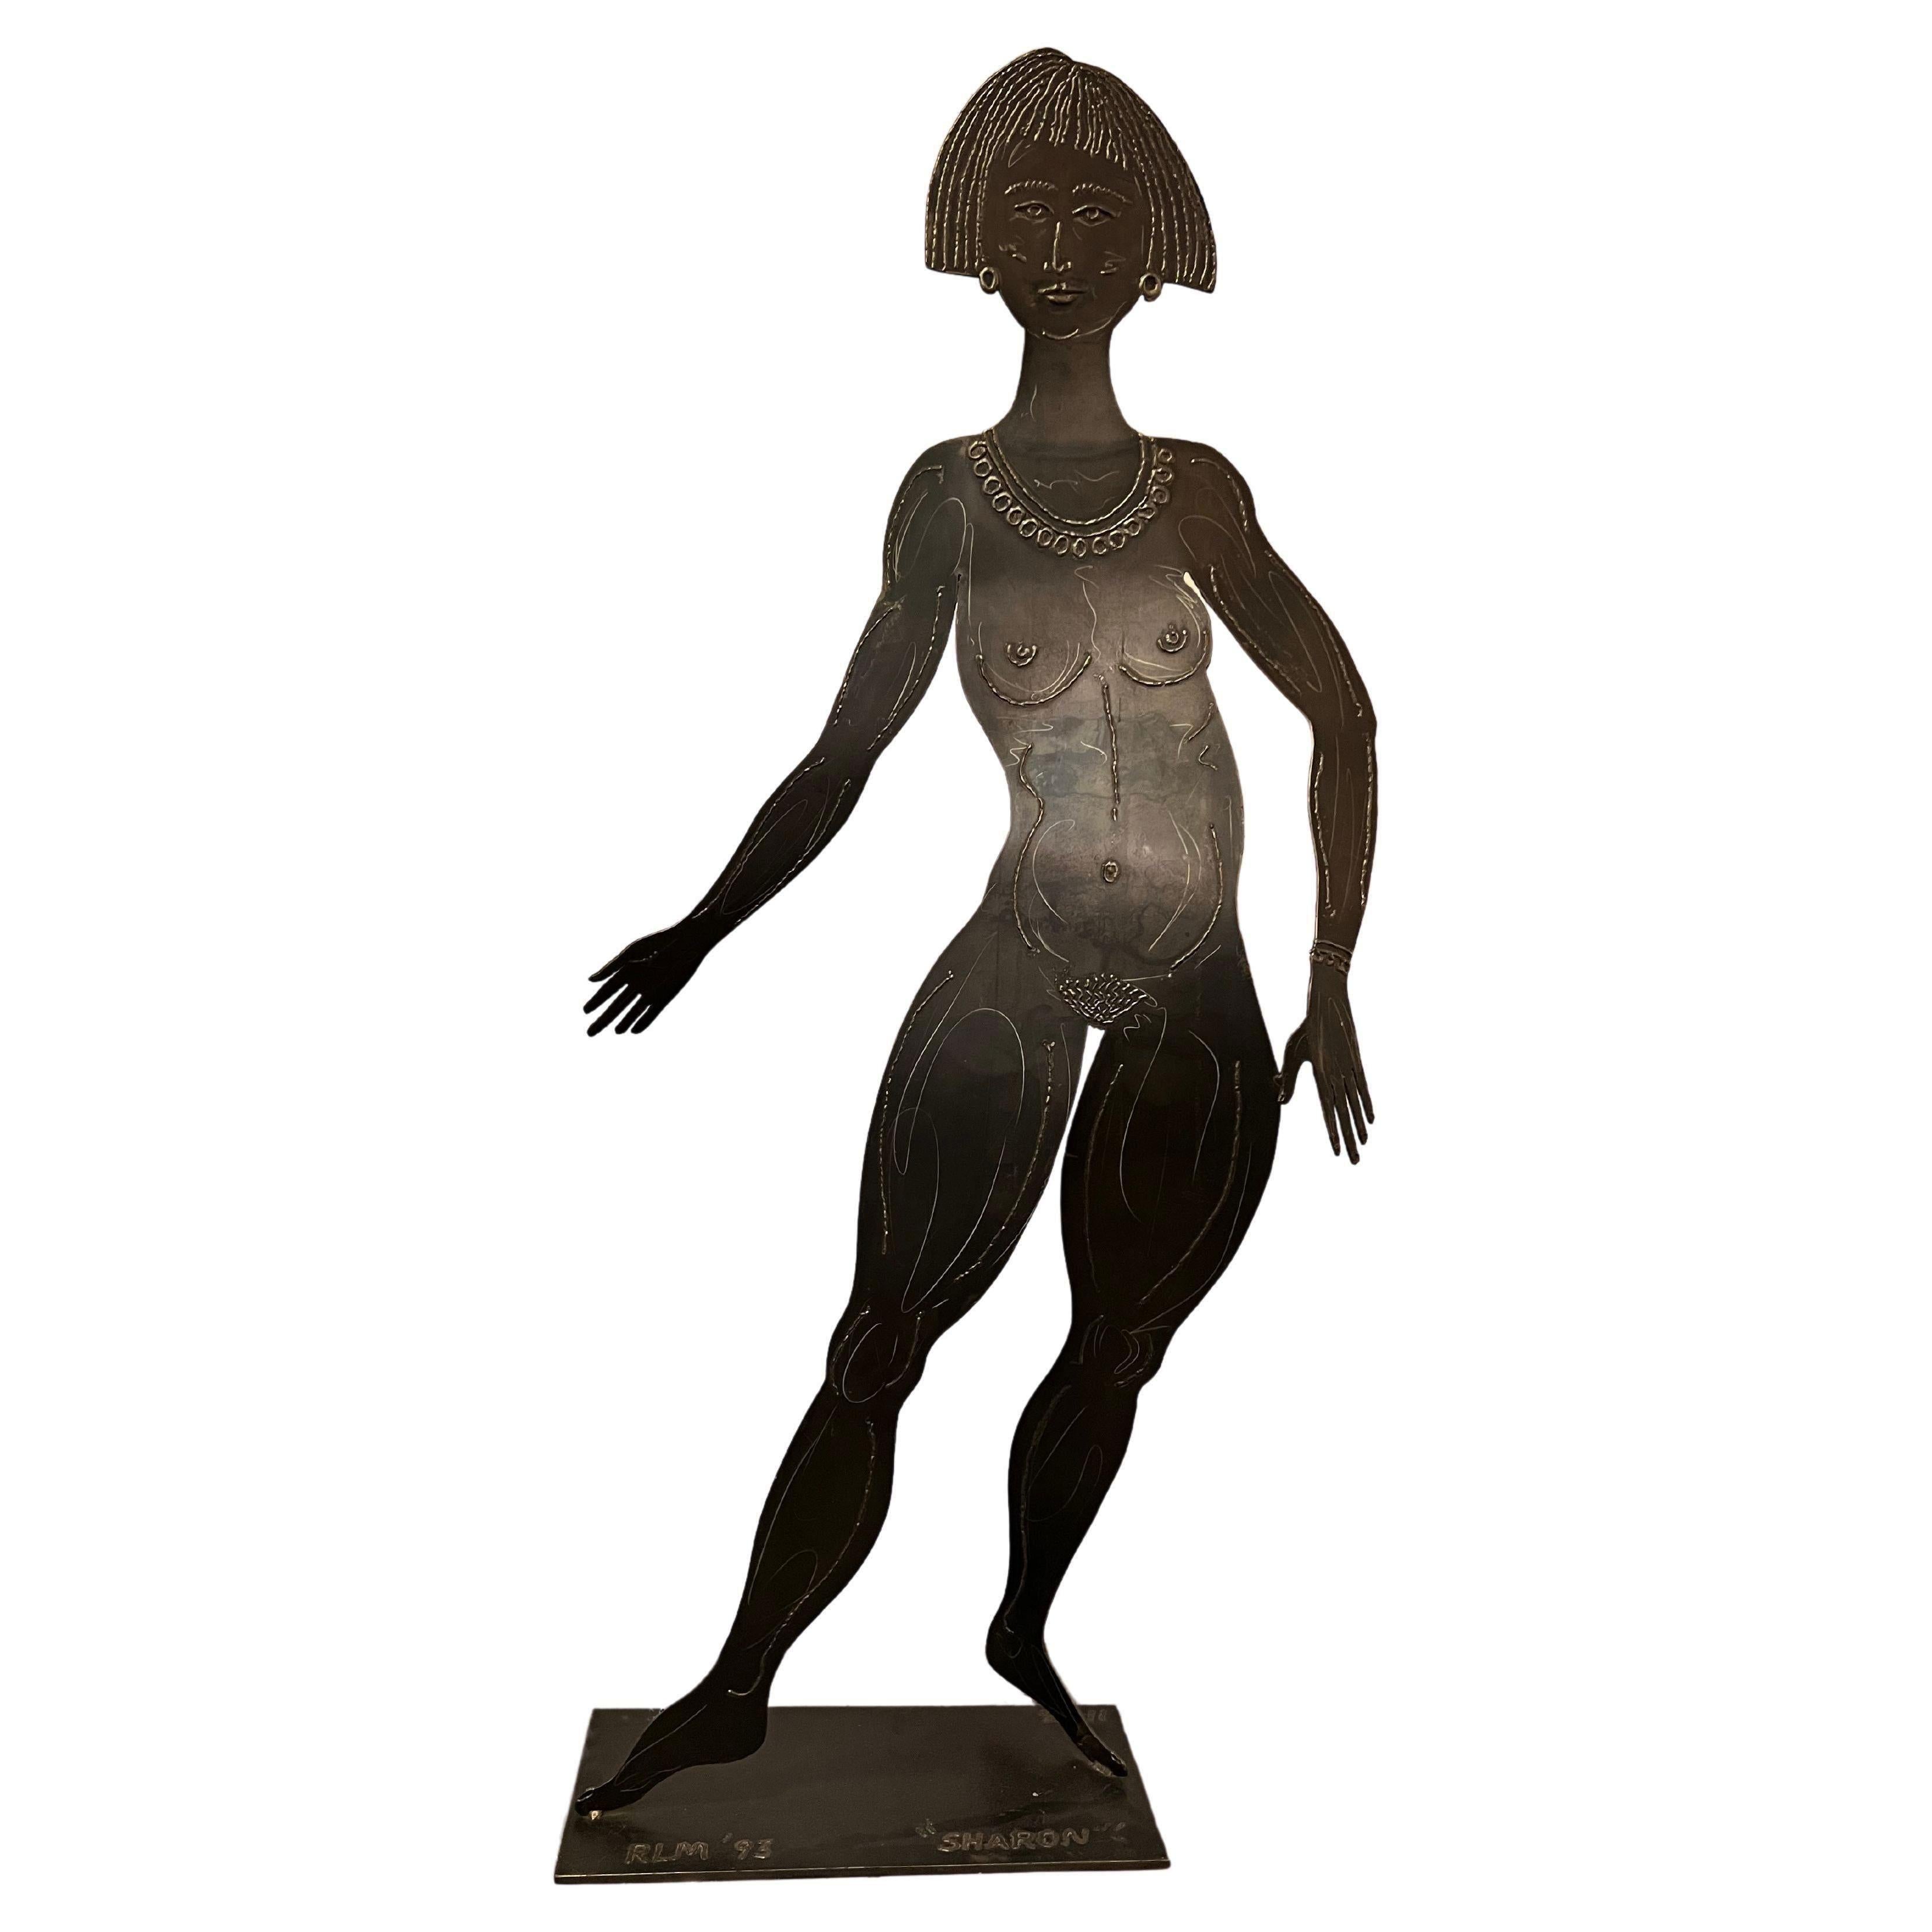 Vor dem Geschäft von Robert Lee Morris in Beverly Hills stand 1993 diese einzigartige, lebensgroße Messingskulptur einer nackten Frau mit Bobschnitt, die nur mit luxuriösem Schmuck bekleidet war. Die Skulptur mit dem Namen "Sharon" spiegelt Morris'